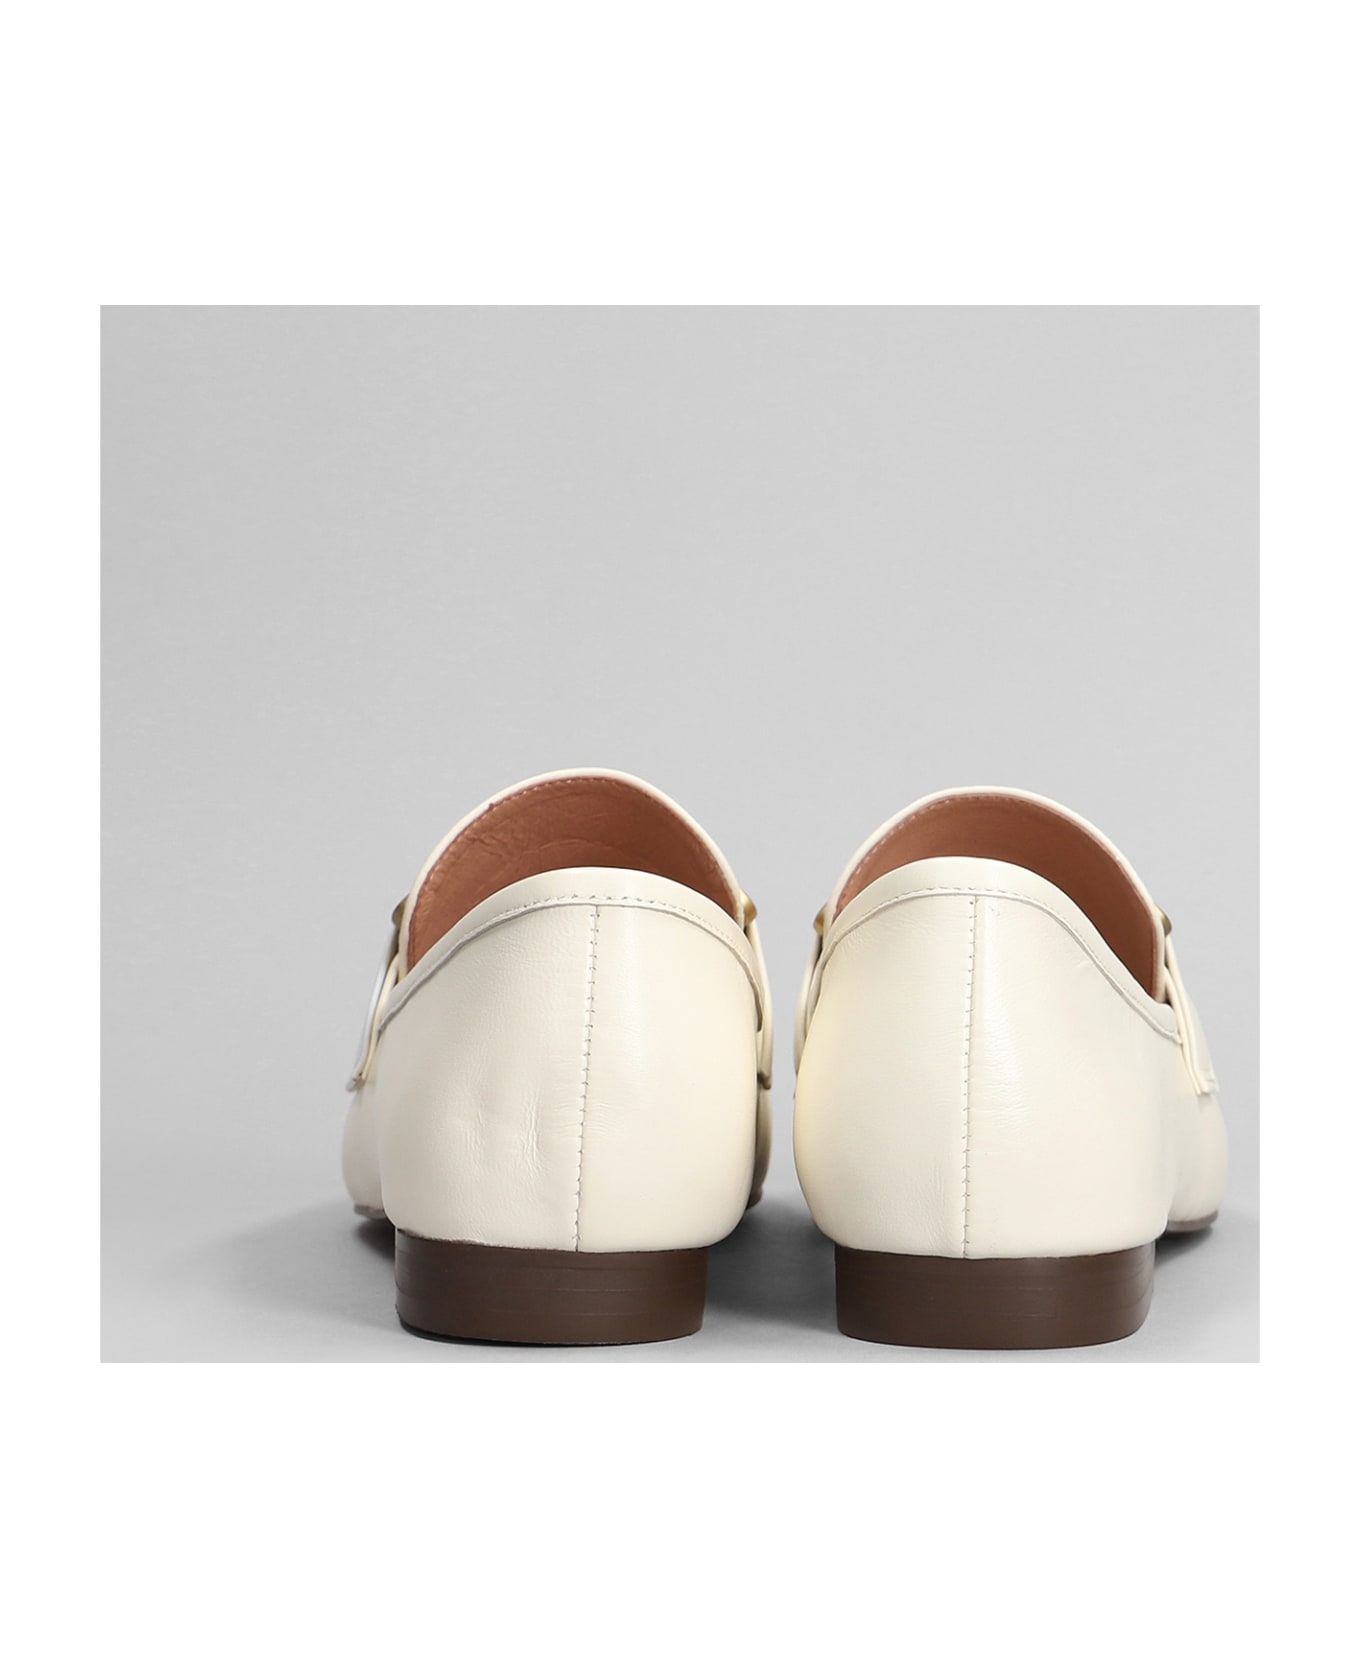 Bibi Lou Zagreb Ii Loafers In Beige Leather - beige